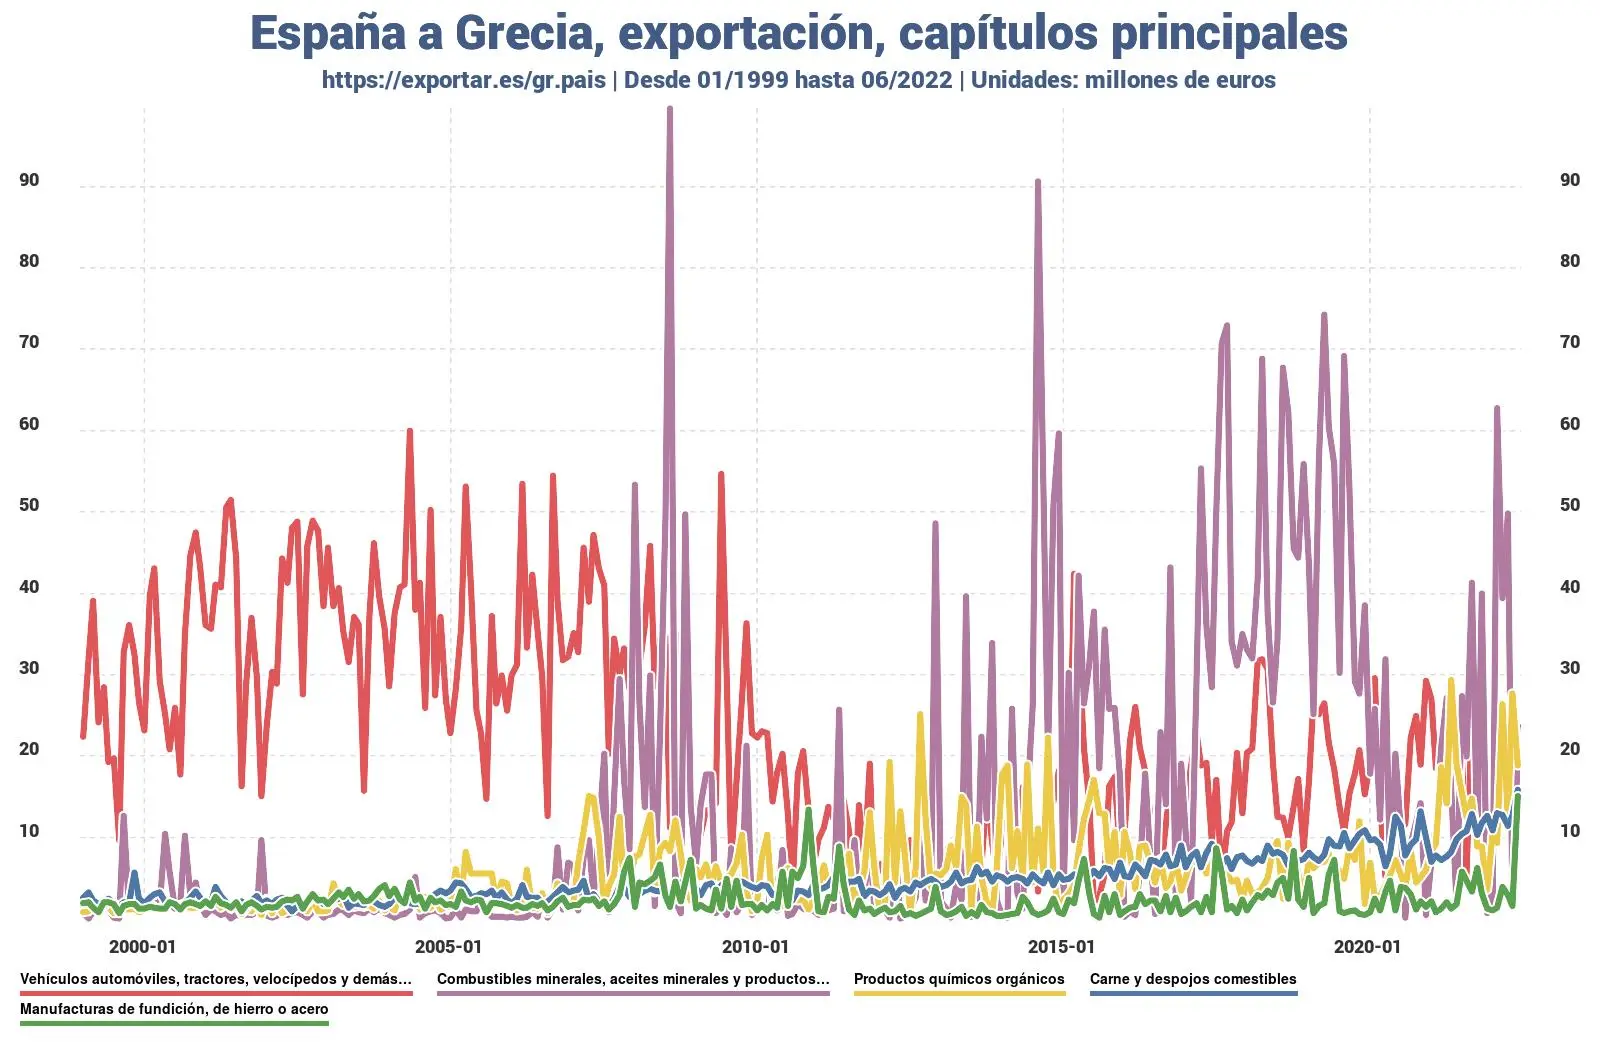 flete exportaciones de colombia a grecia - Qué es lo que más exporta Colombia a USA